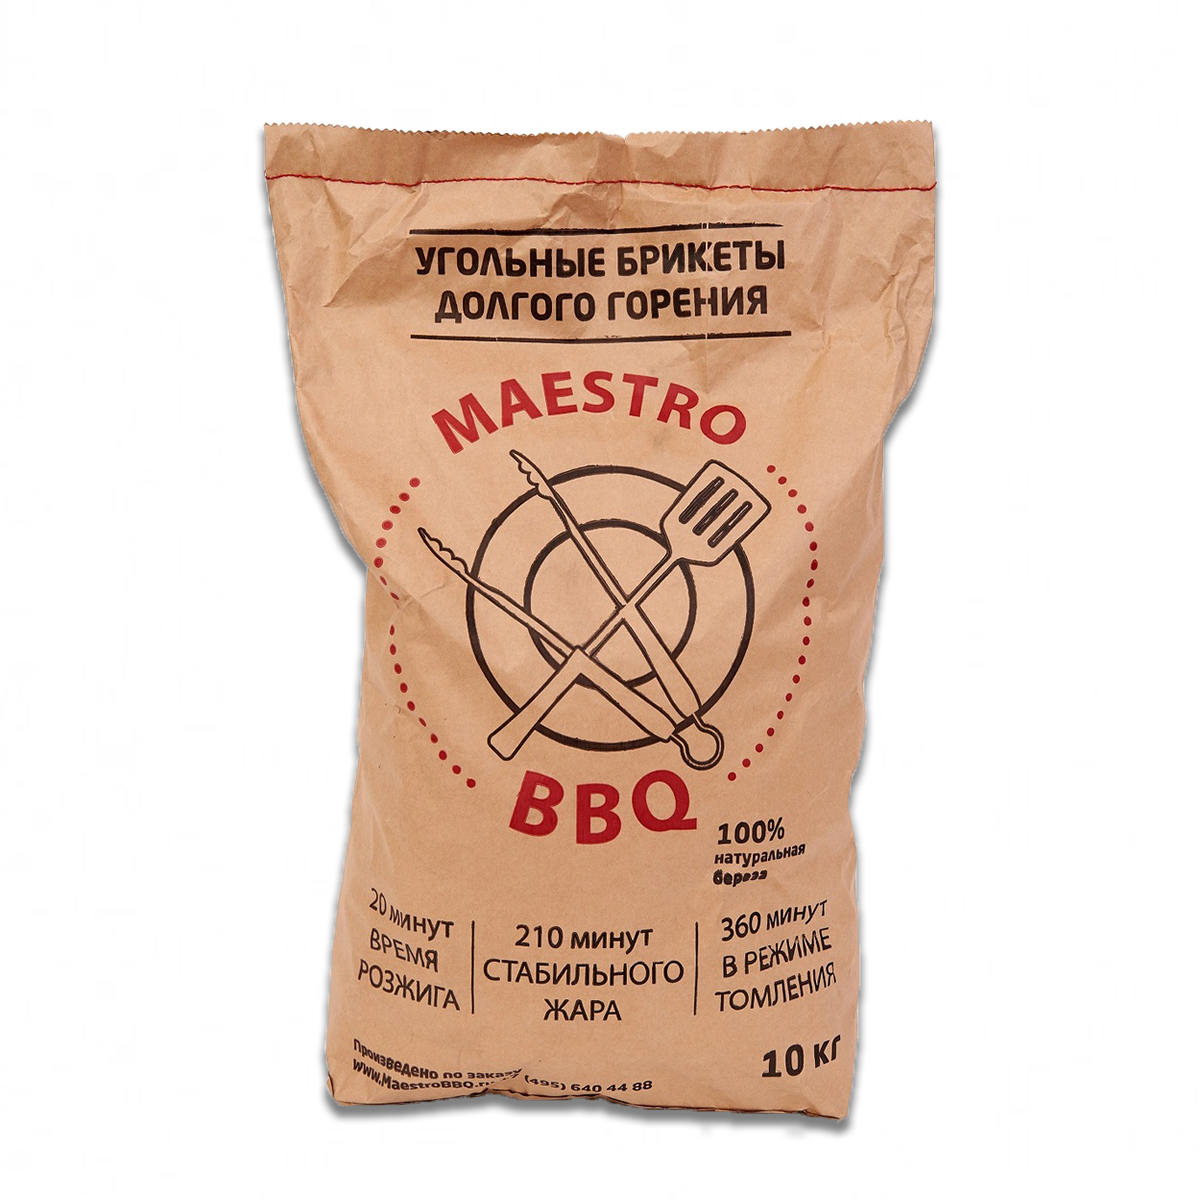 Угольные брикеты MaestroBBQ, 10 кг